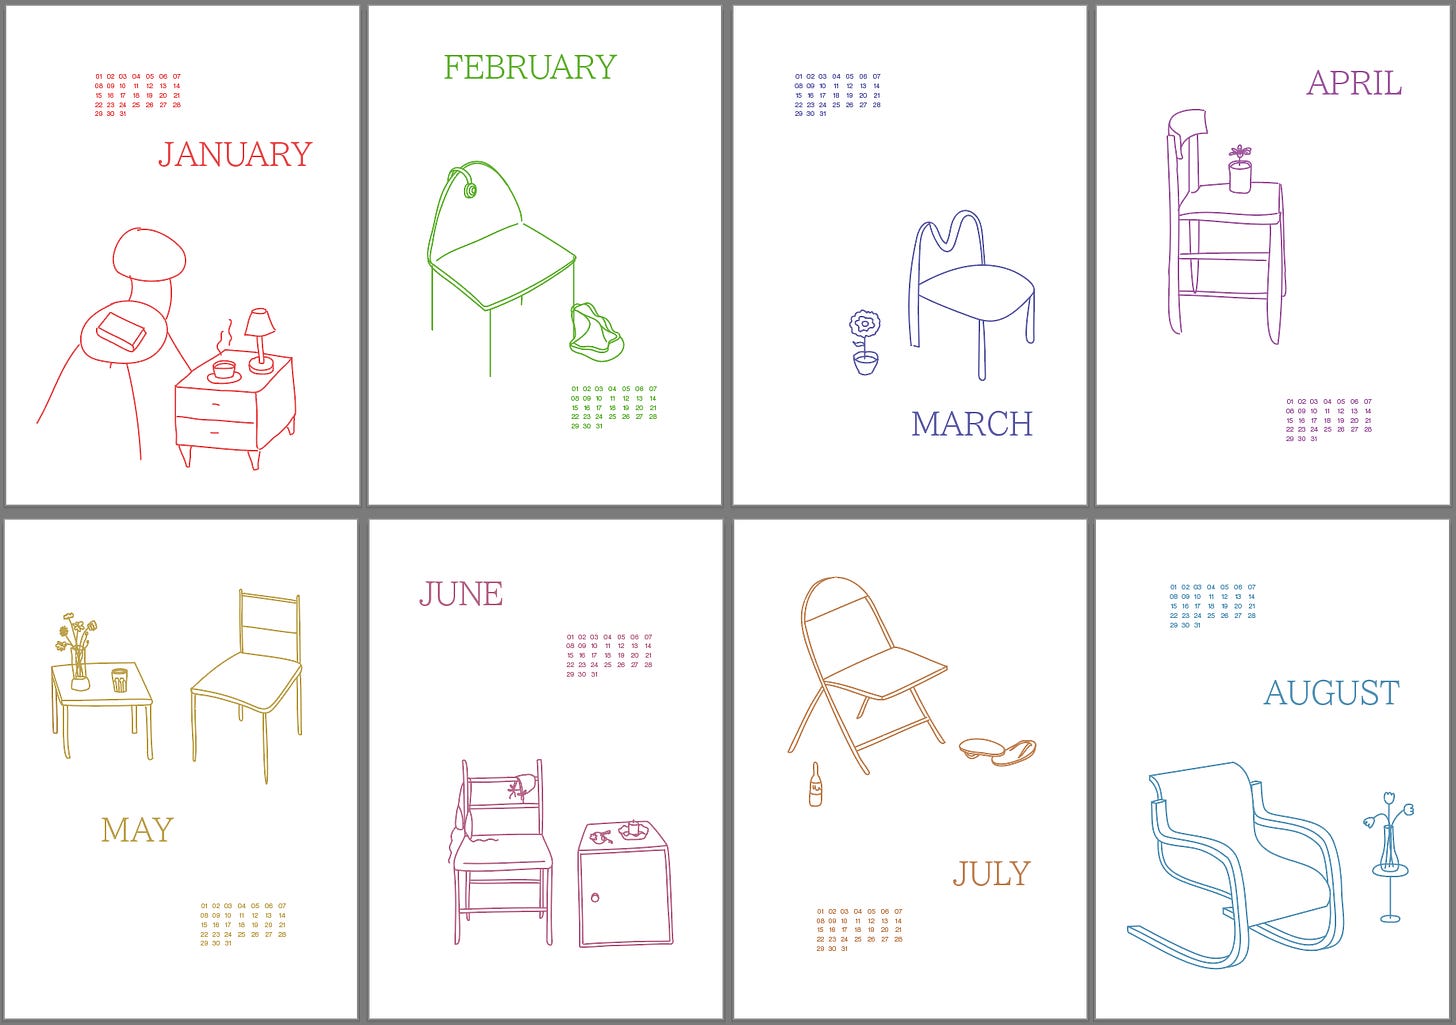 designs for the calendar on adobe illustrator